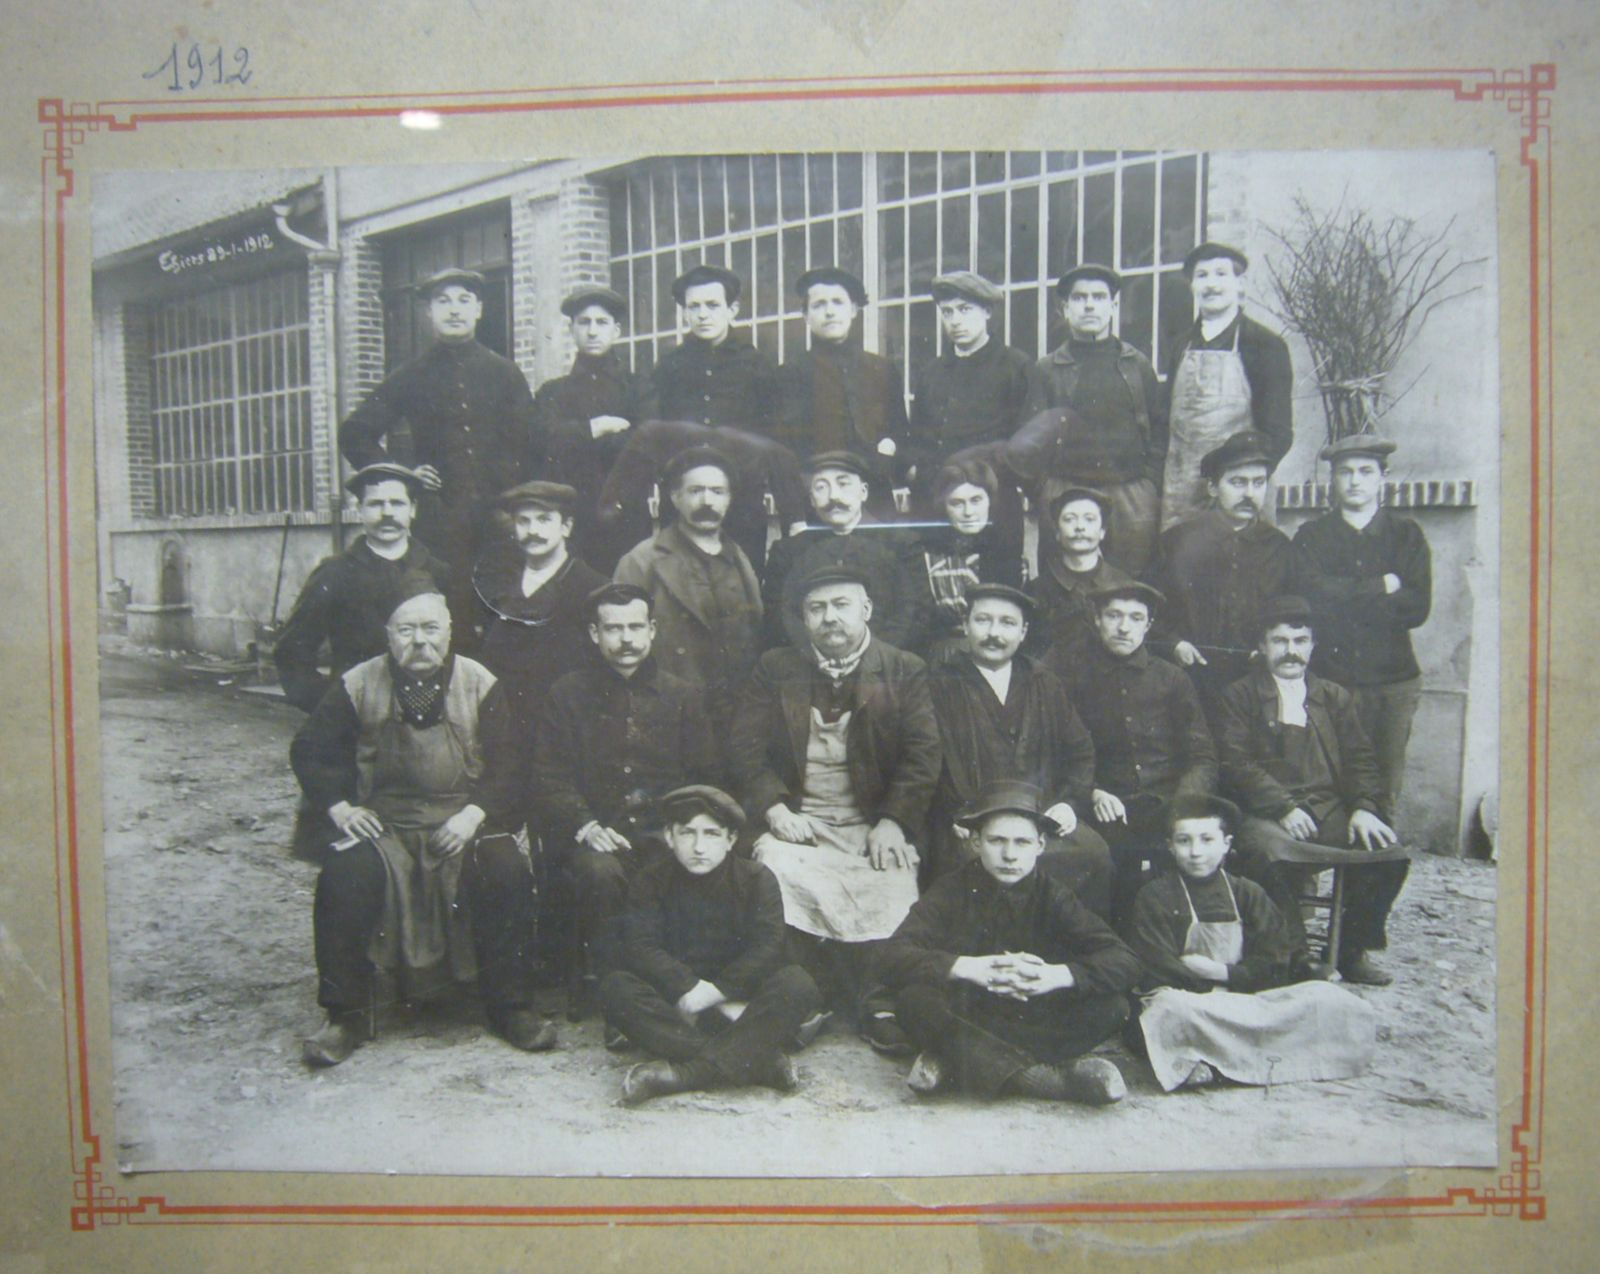 Inhaber und Belegschaft von Thiers-Issard im Jahr 1912